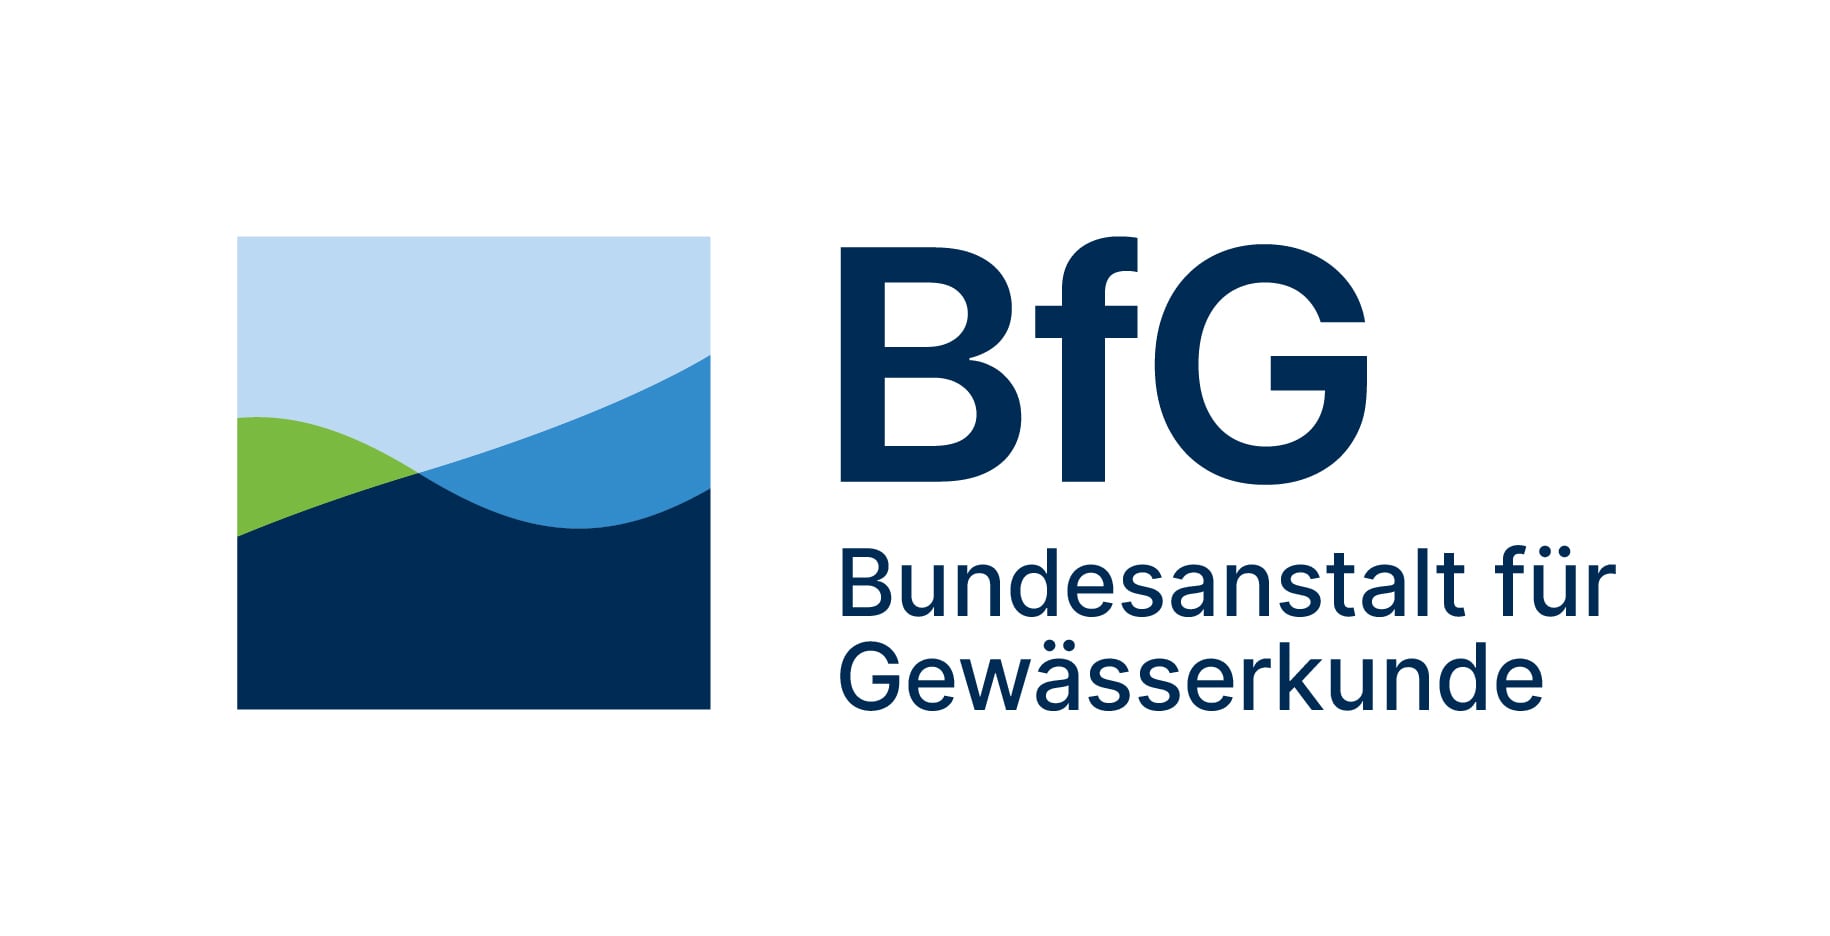 Logo: Bundesanstalt für Gewässerkunde